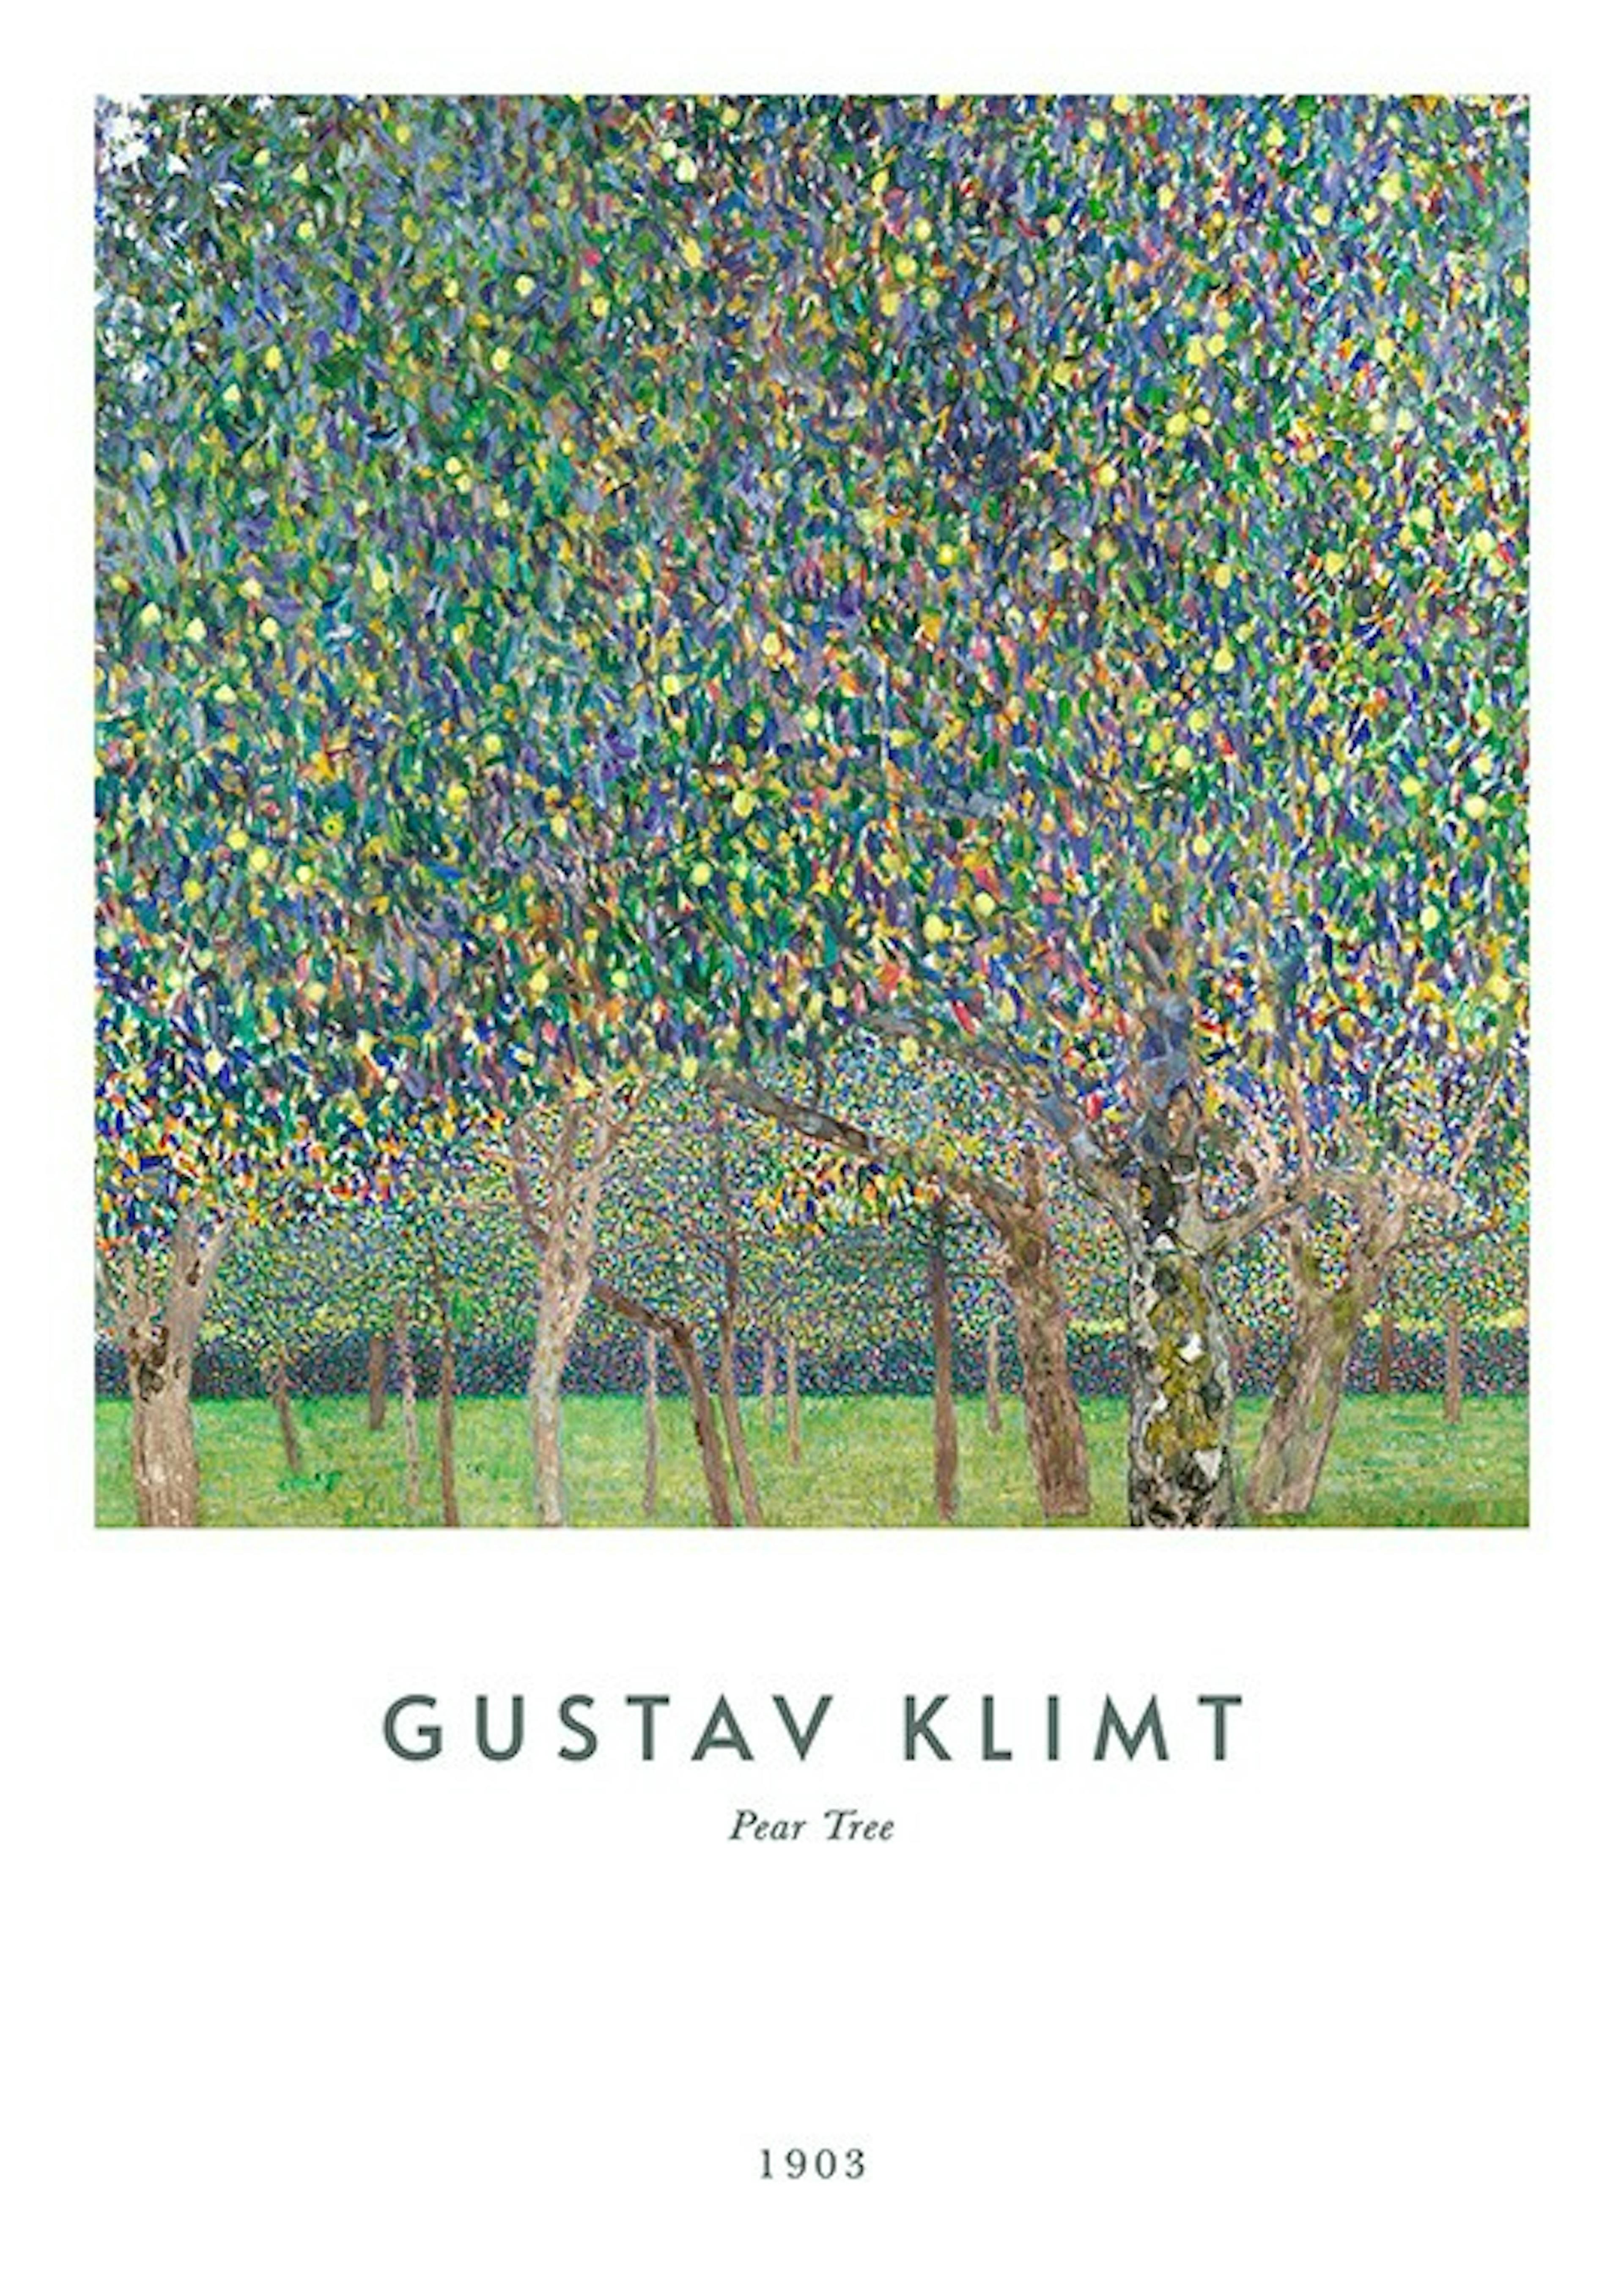 Gustav Klimt - Pear Tree Poster 0